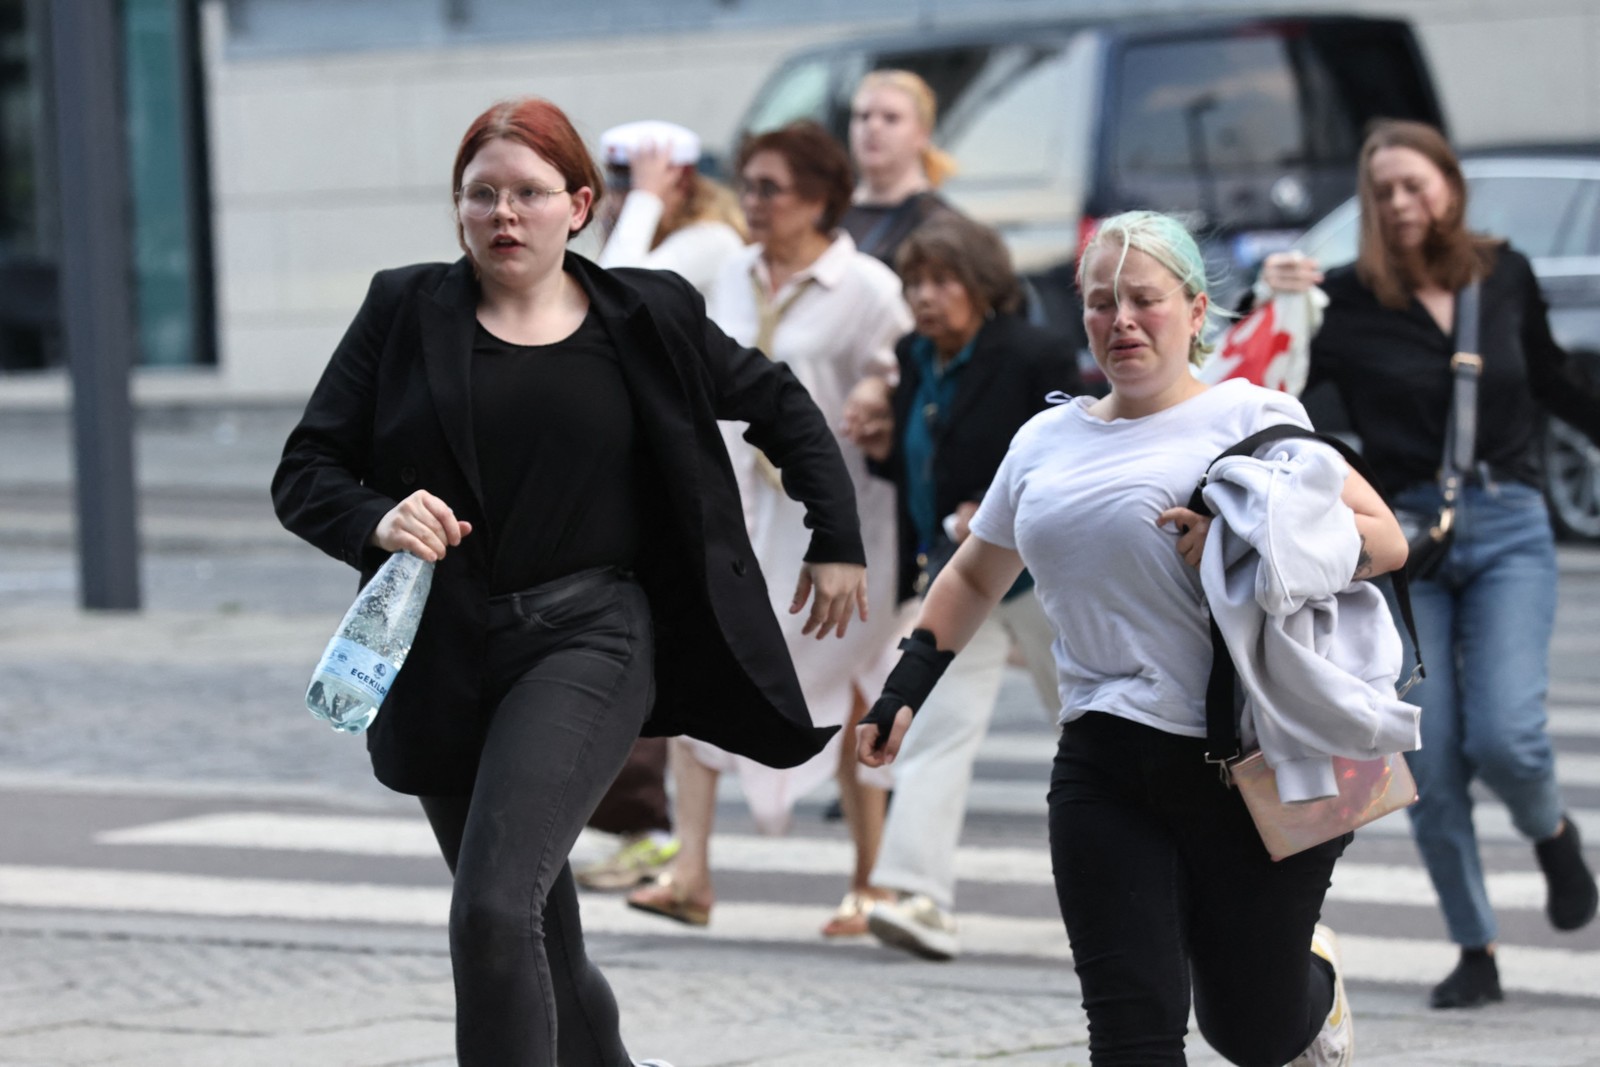 Clientes deixam o shopping correndo durante evacuação do prédio após disparos de armas de fogo — Foto: Olafur Steinar Gestsson / Ritzau Scanpix / AFP